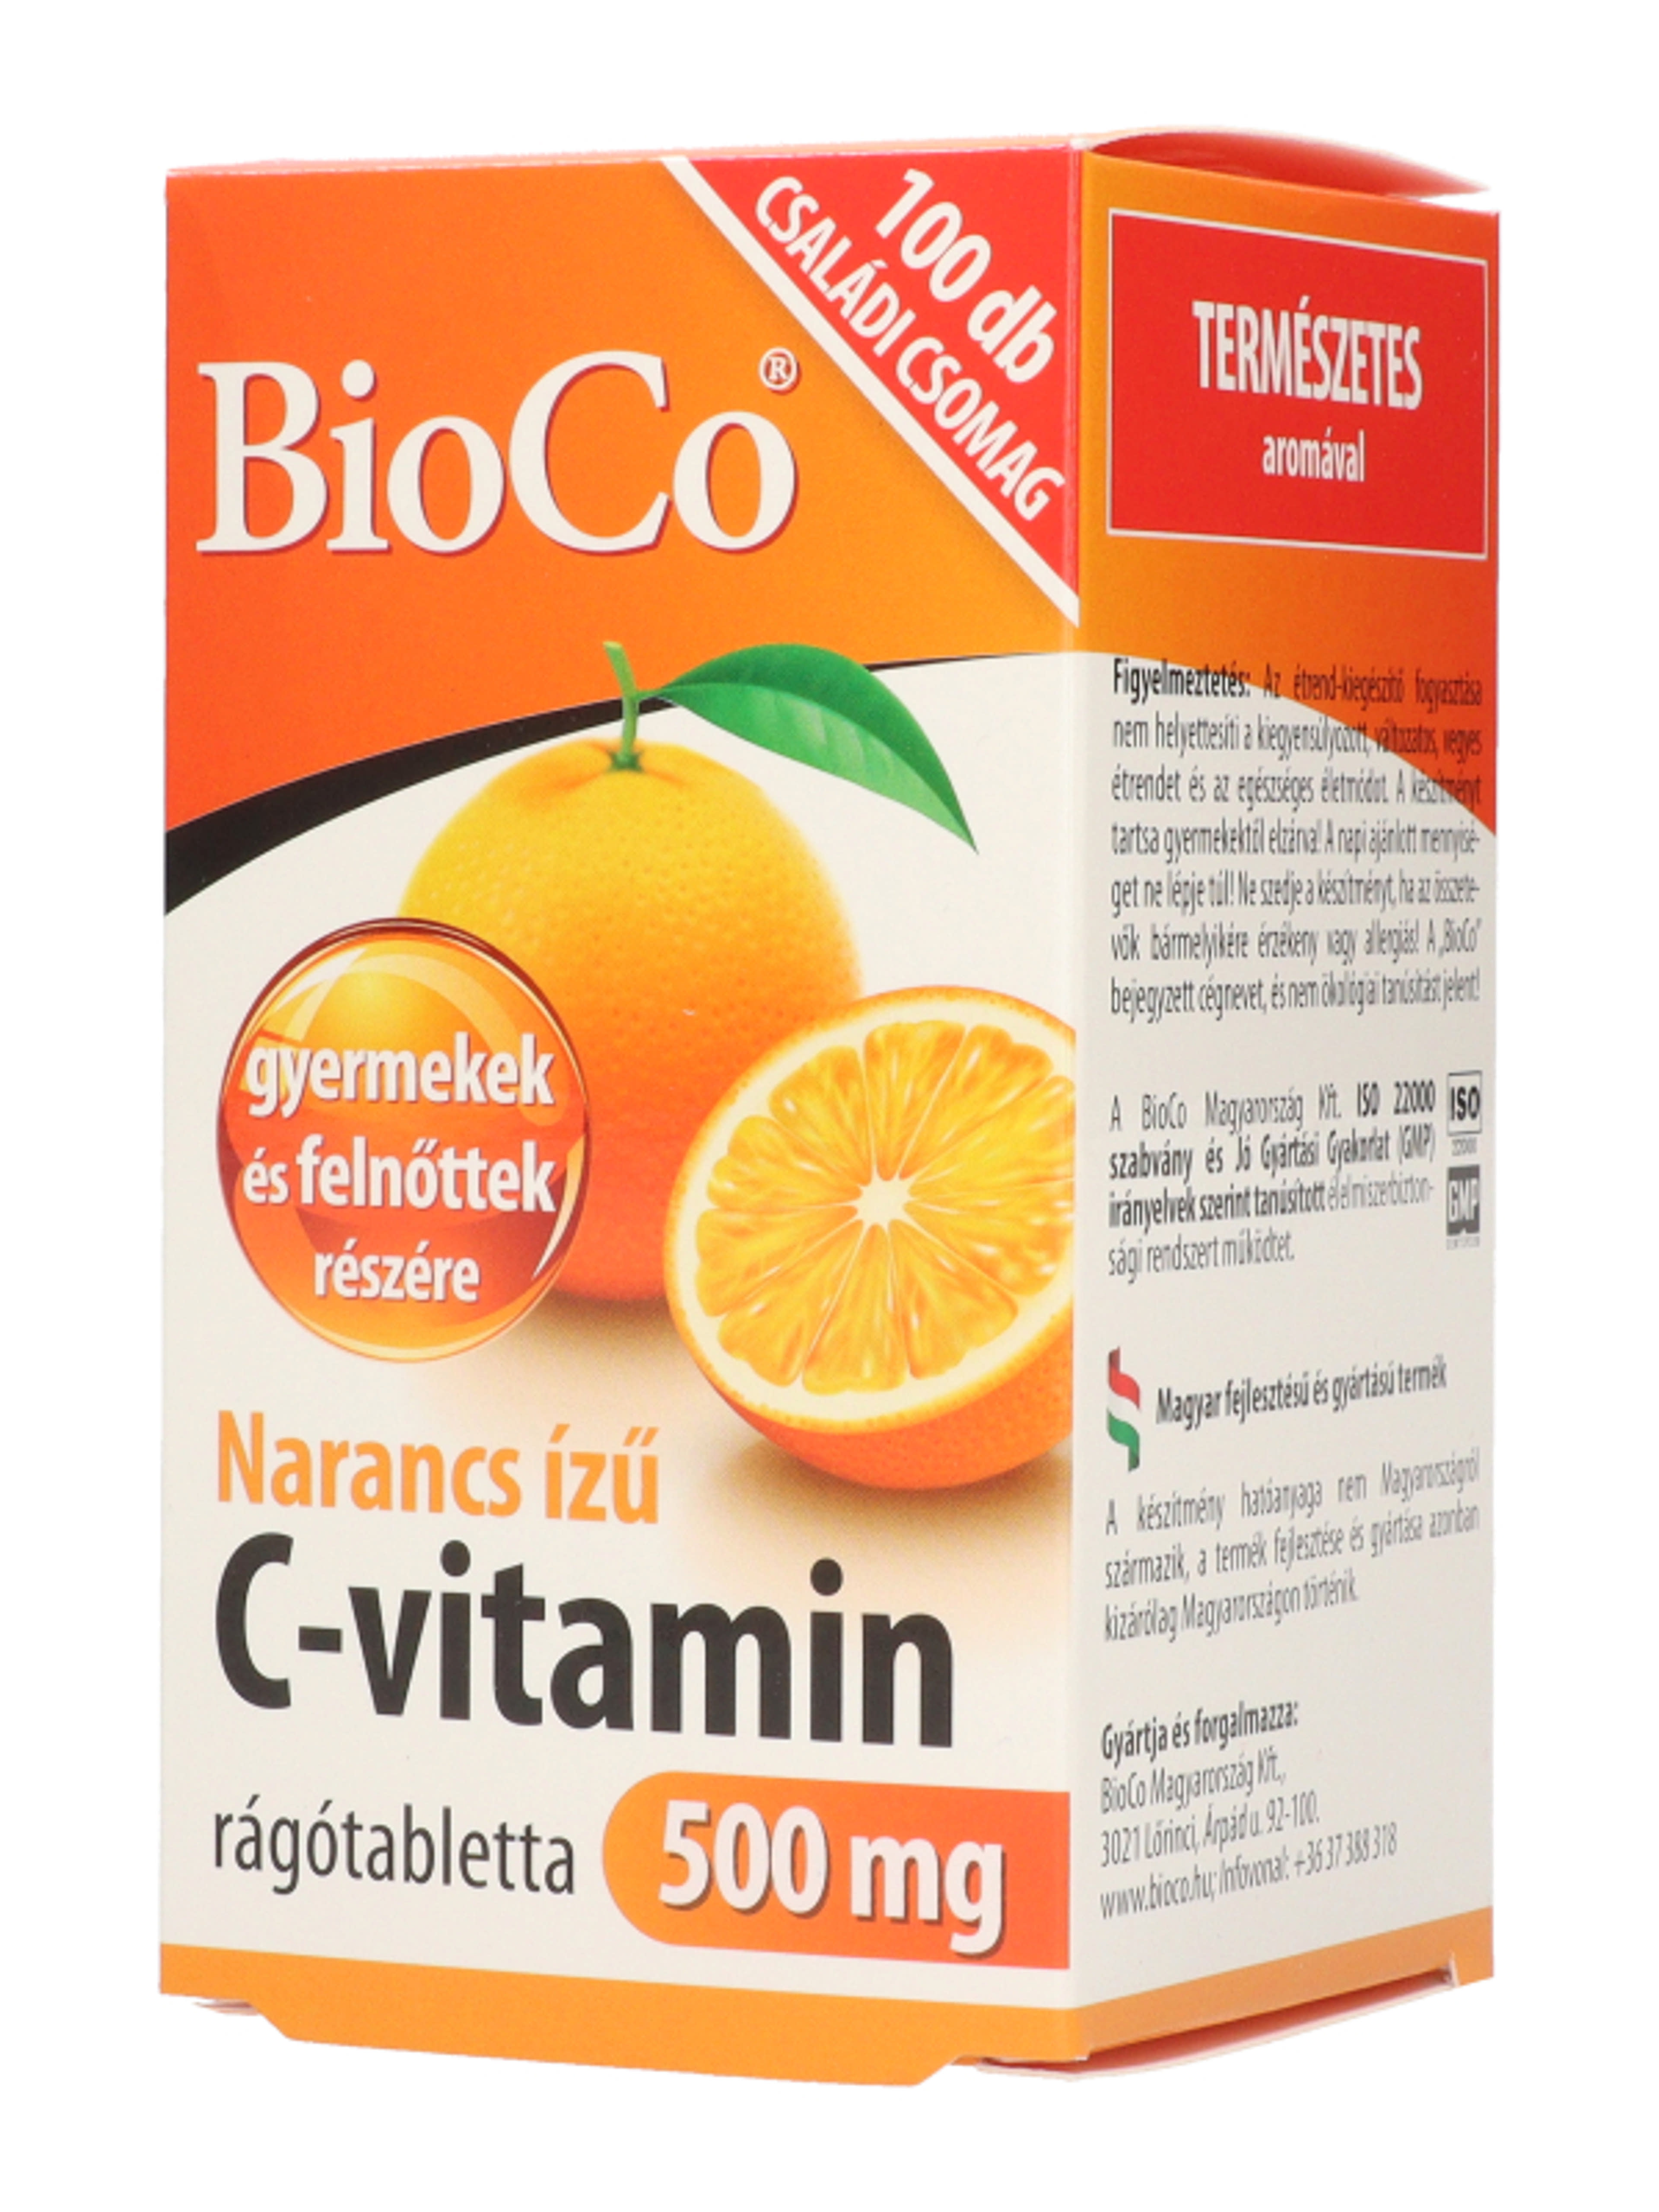 Bioco narancs ízű C-vitamin 500 mg rágótabletta - 100 db-4